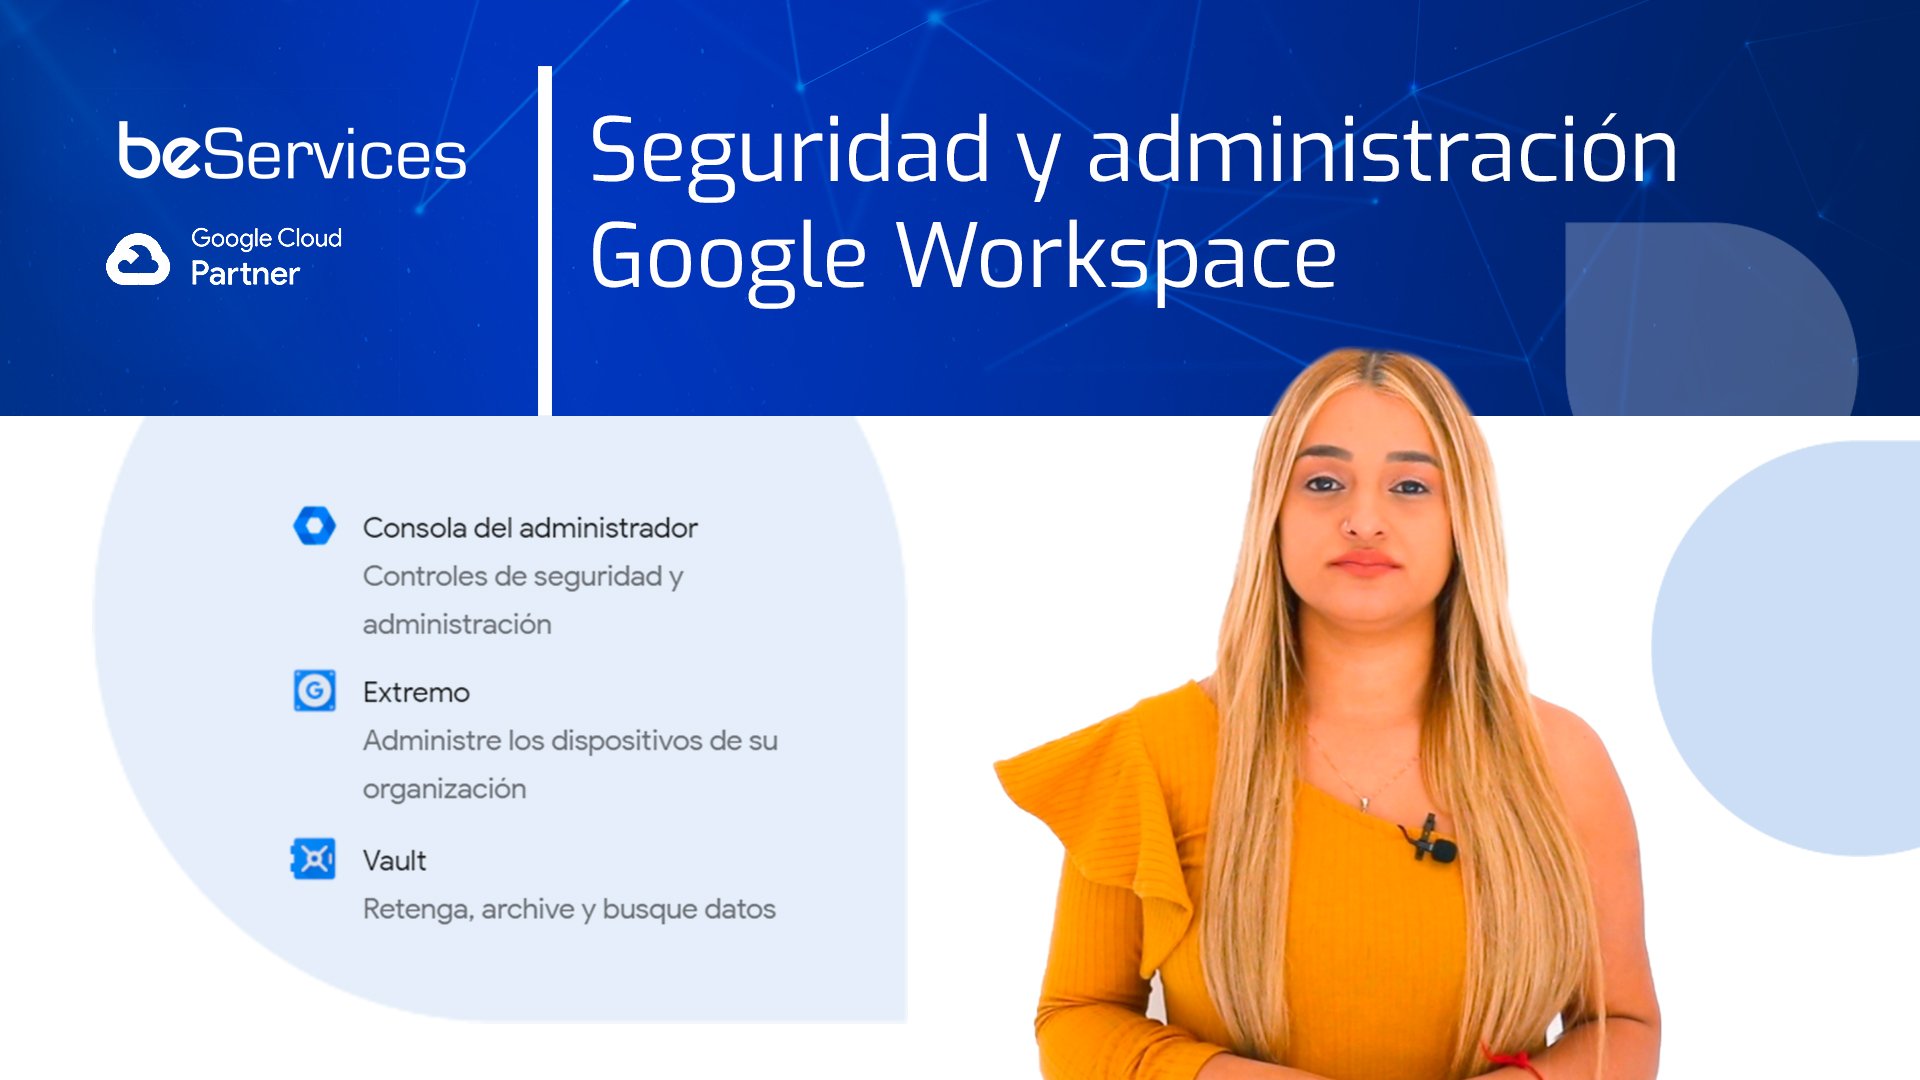 Miniaturas Be Services 4_Seguridad y administración Google Workspace[5749]